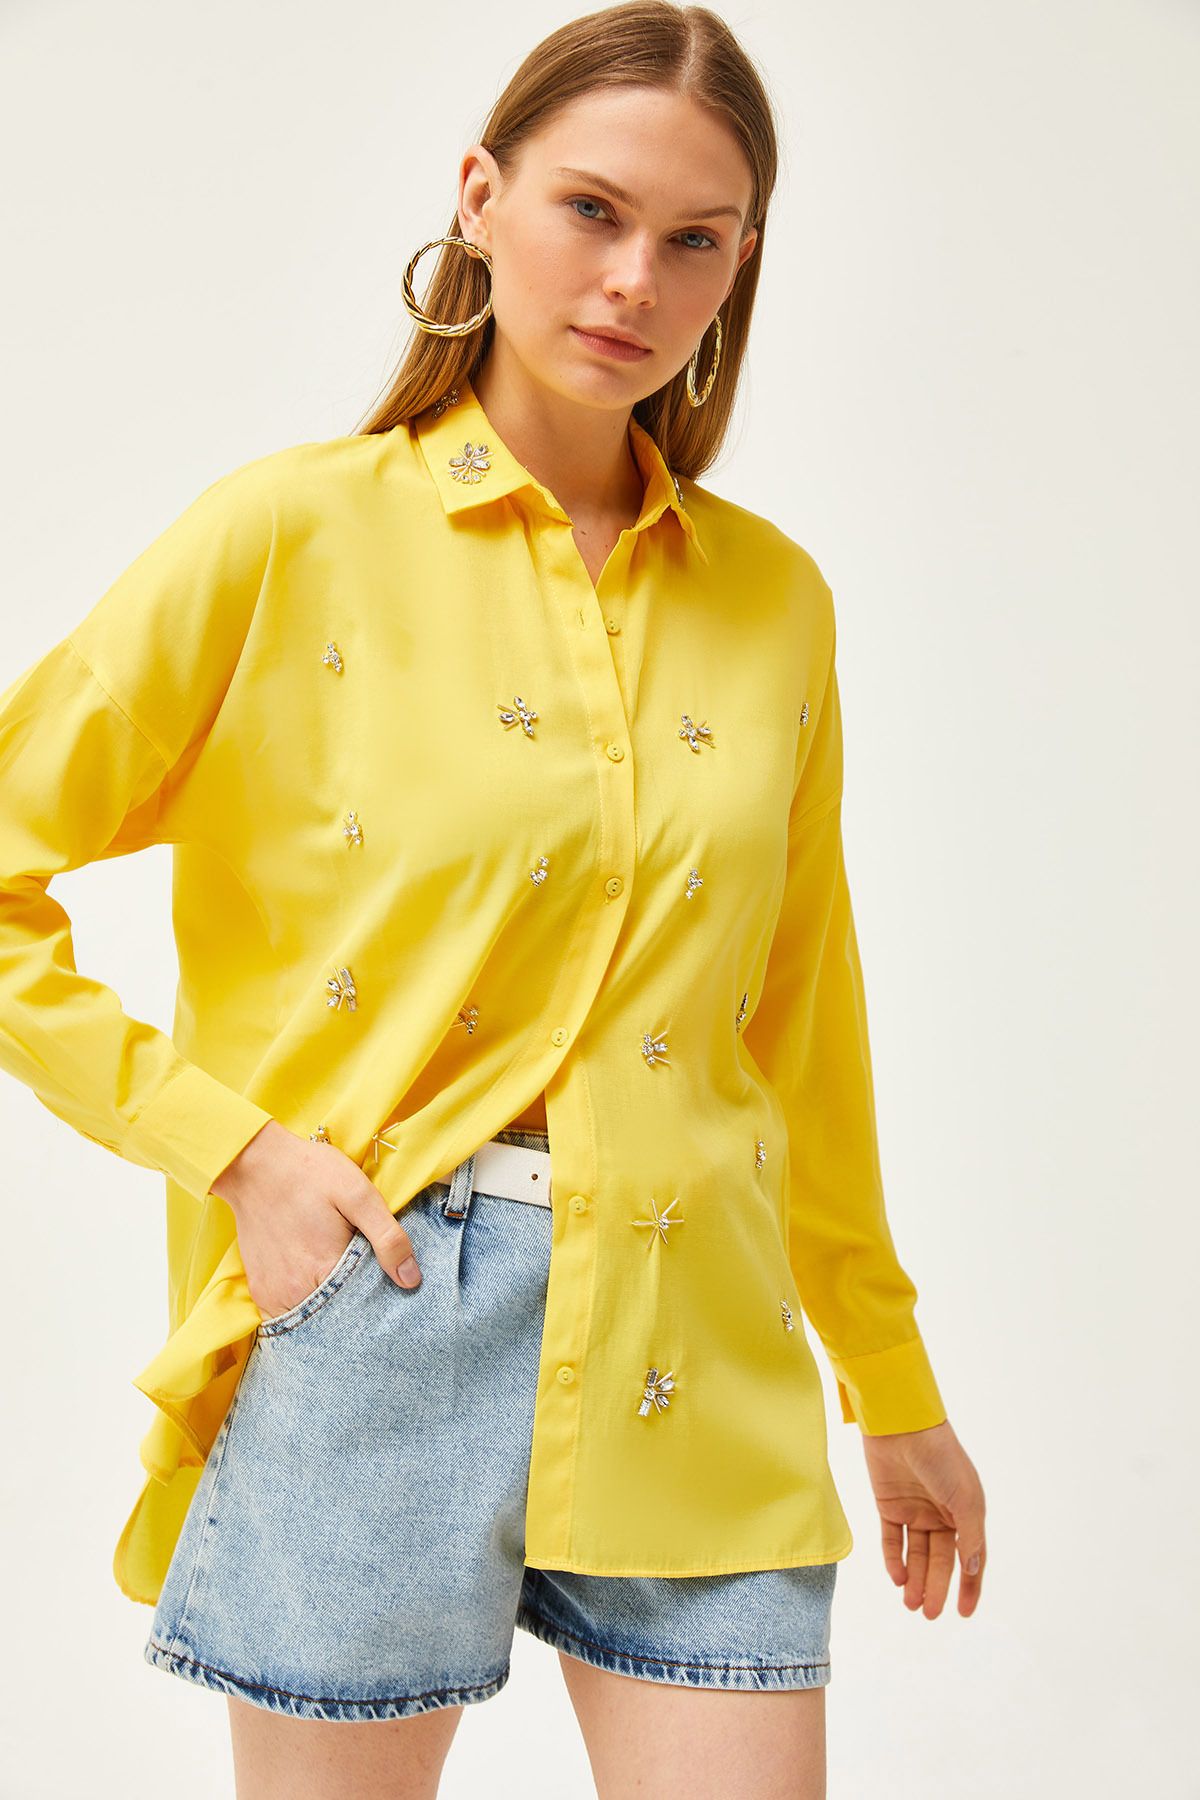 Olalook Kadın Sarı Yakası ve Önü Taşlı Altı Oval Dokuma Gömlek GML-19001149